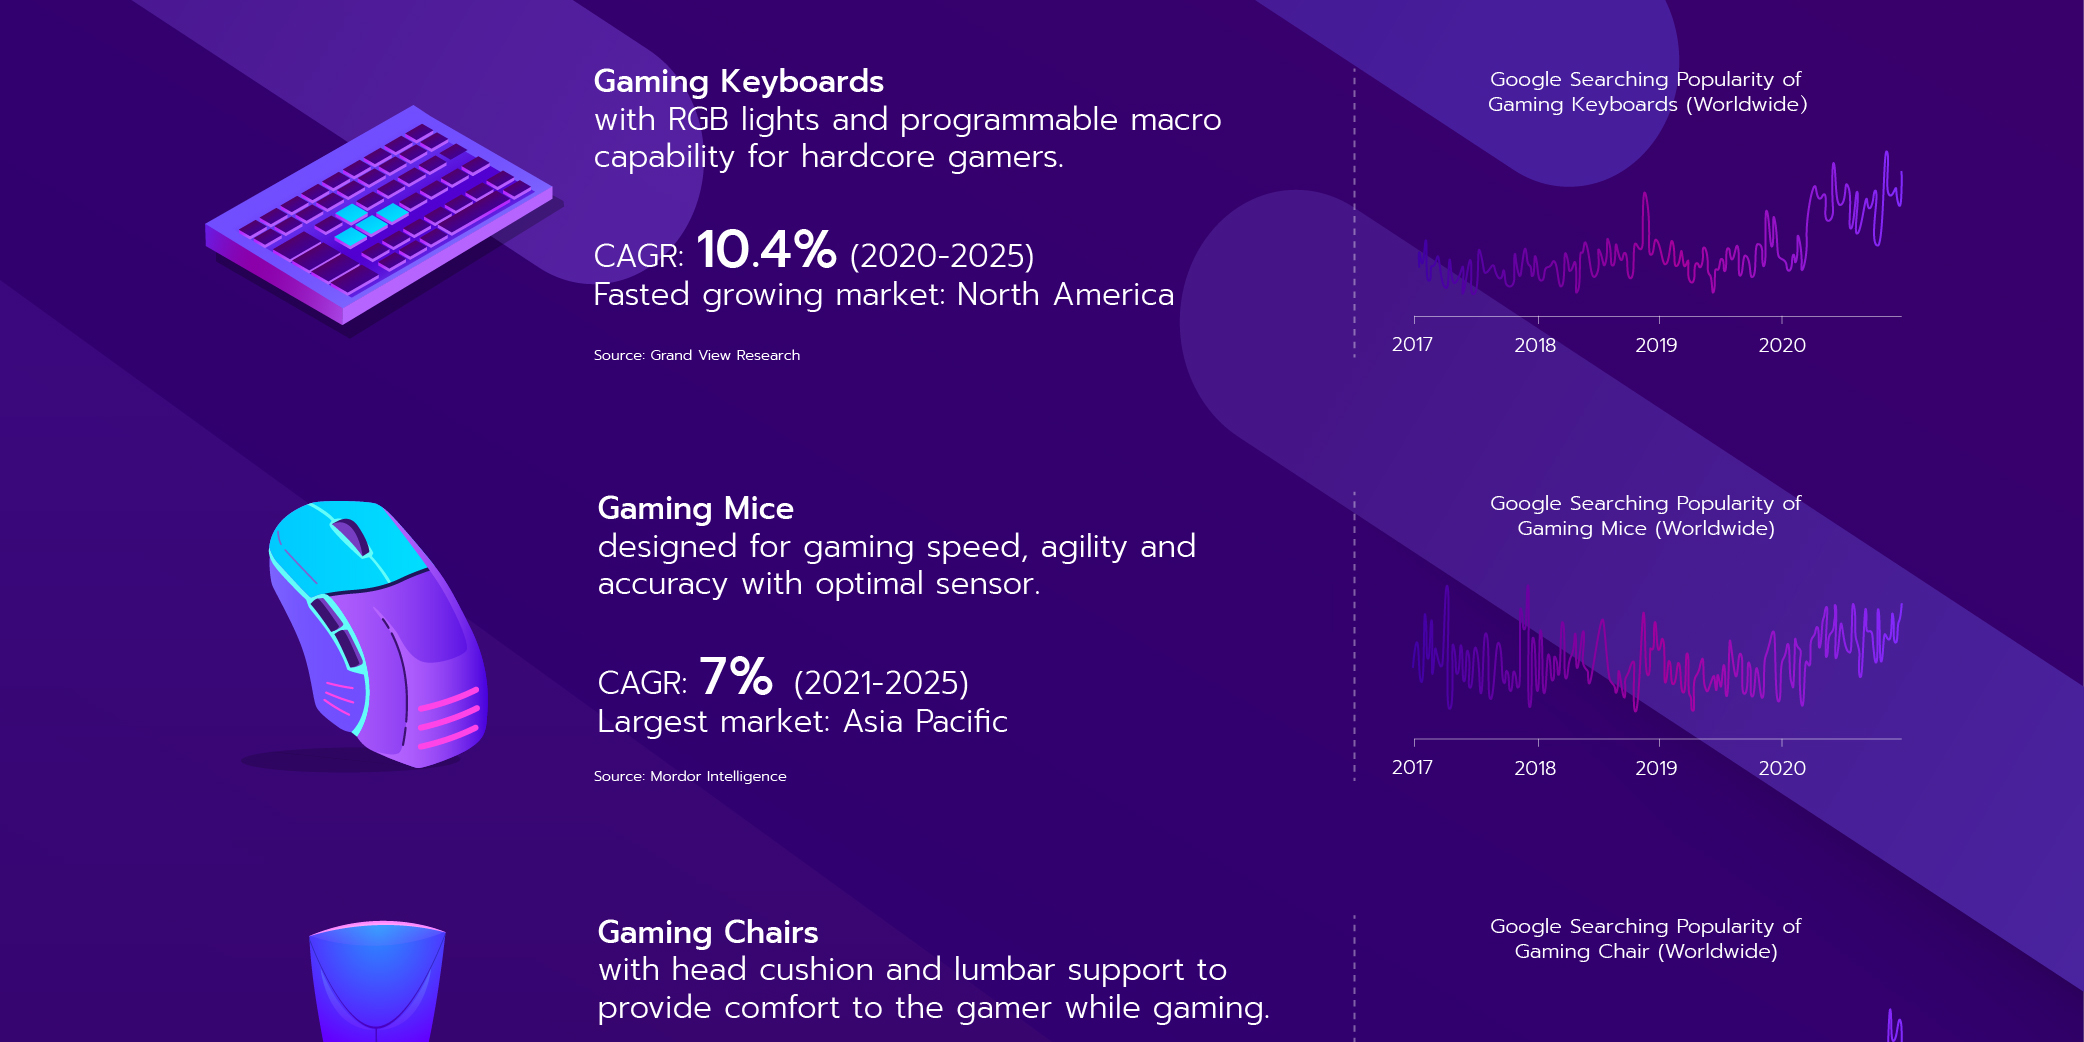 Gaming mice and gaming keyboard